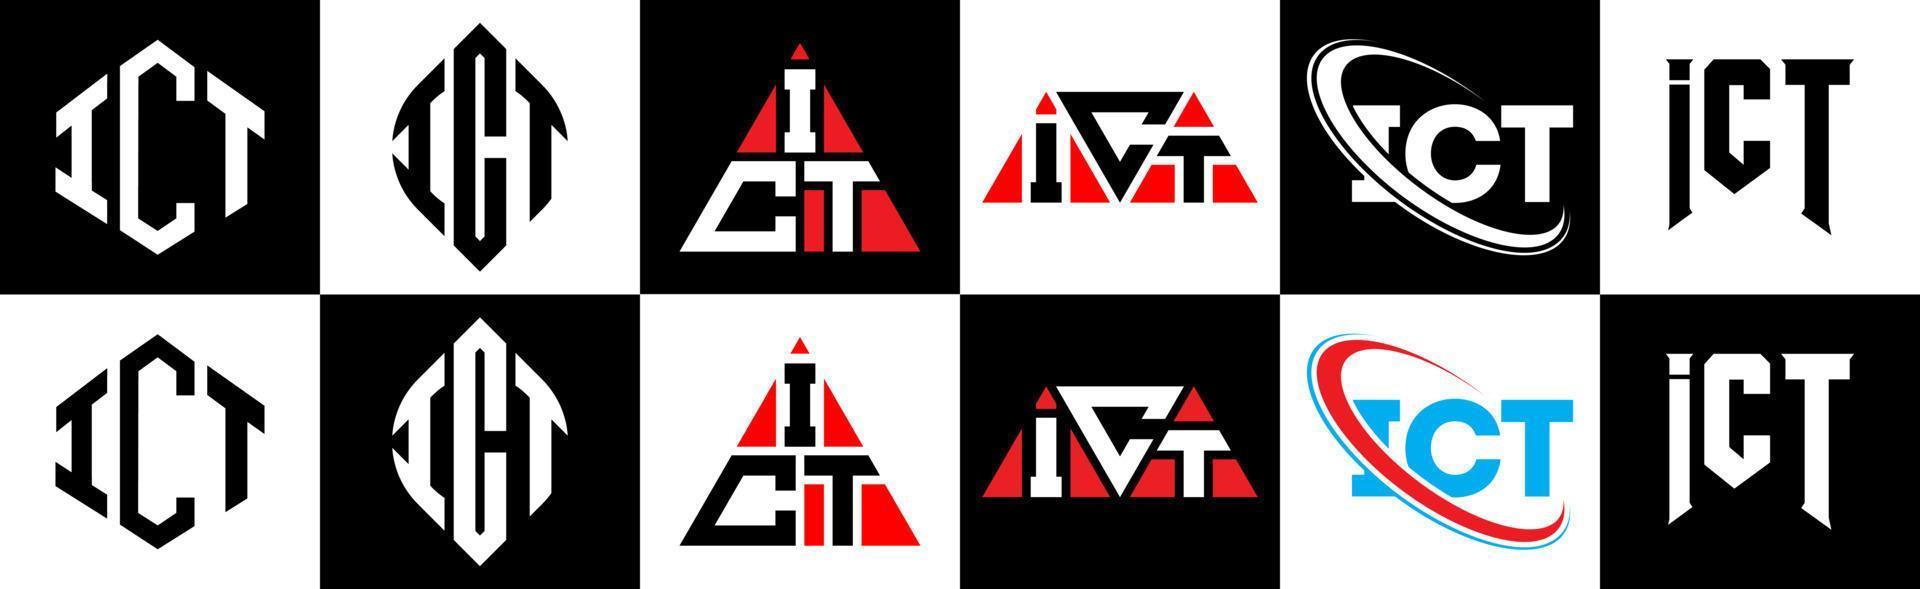 création de logo de lettre ict en six styles. ict polygone, cercle, triangle, hexagone, style plat et simple avec logo de lettre de variation de couleur noir et blanc dans un plan de travail. ic logo minimaliste et classique vecteur